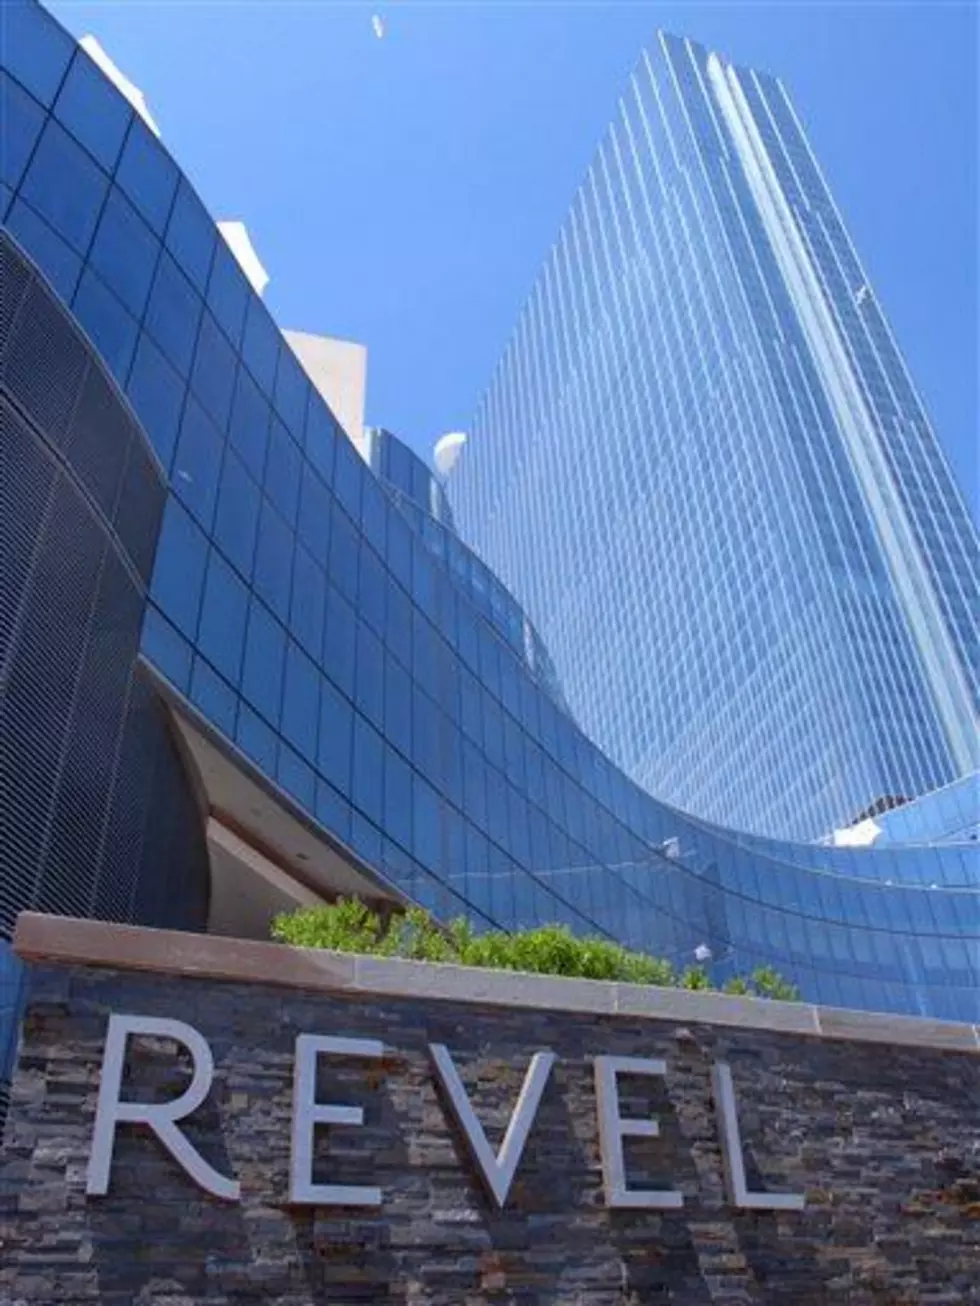 Revel casino still talking with potential bidders